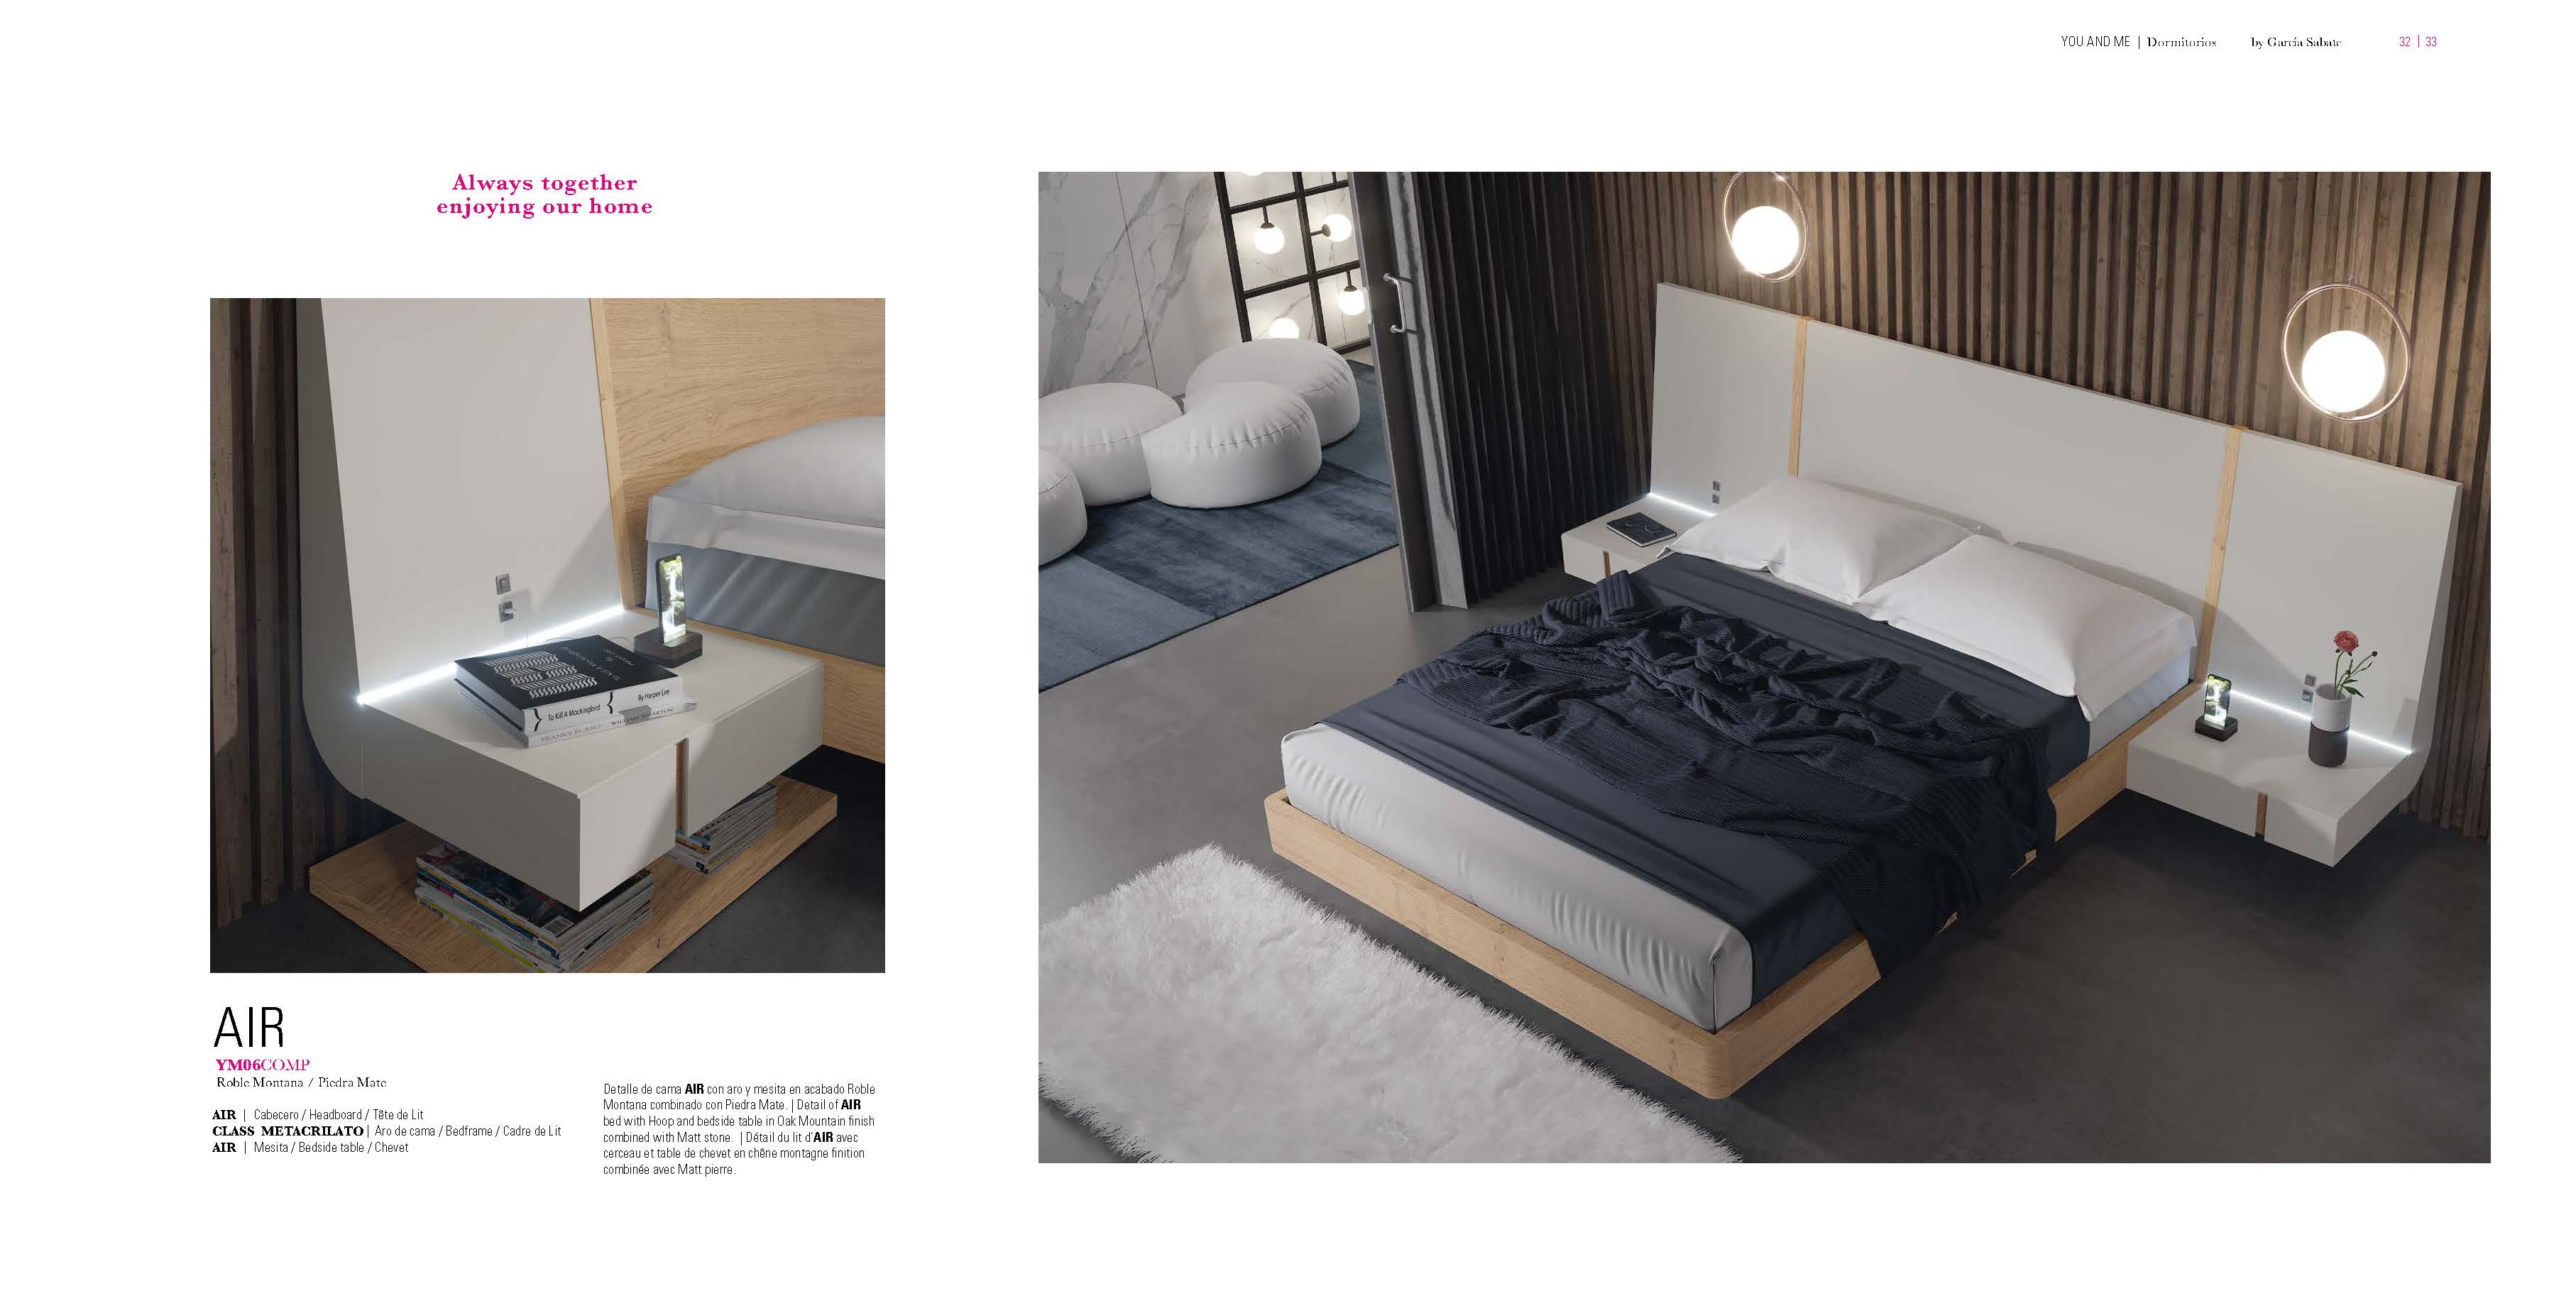 Bedroom Furniture Nightstands YM06